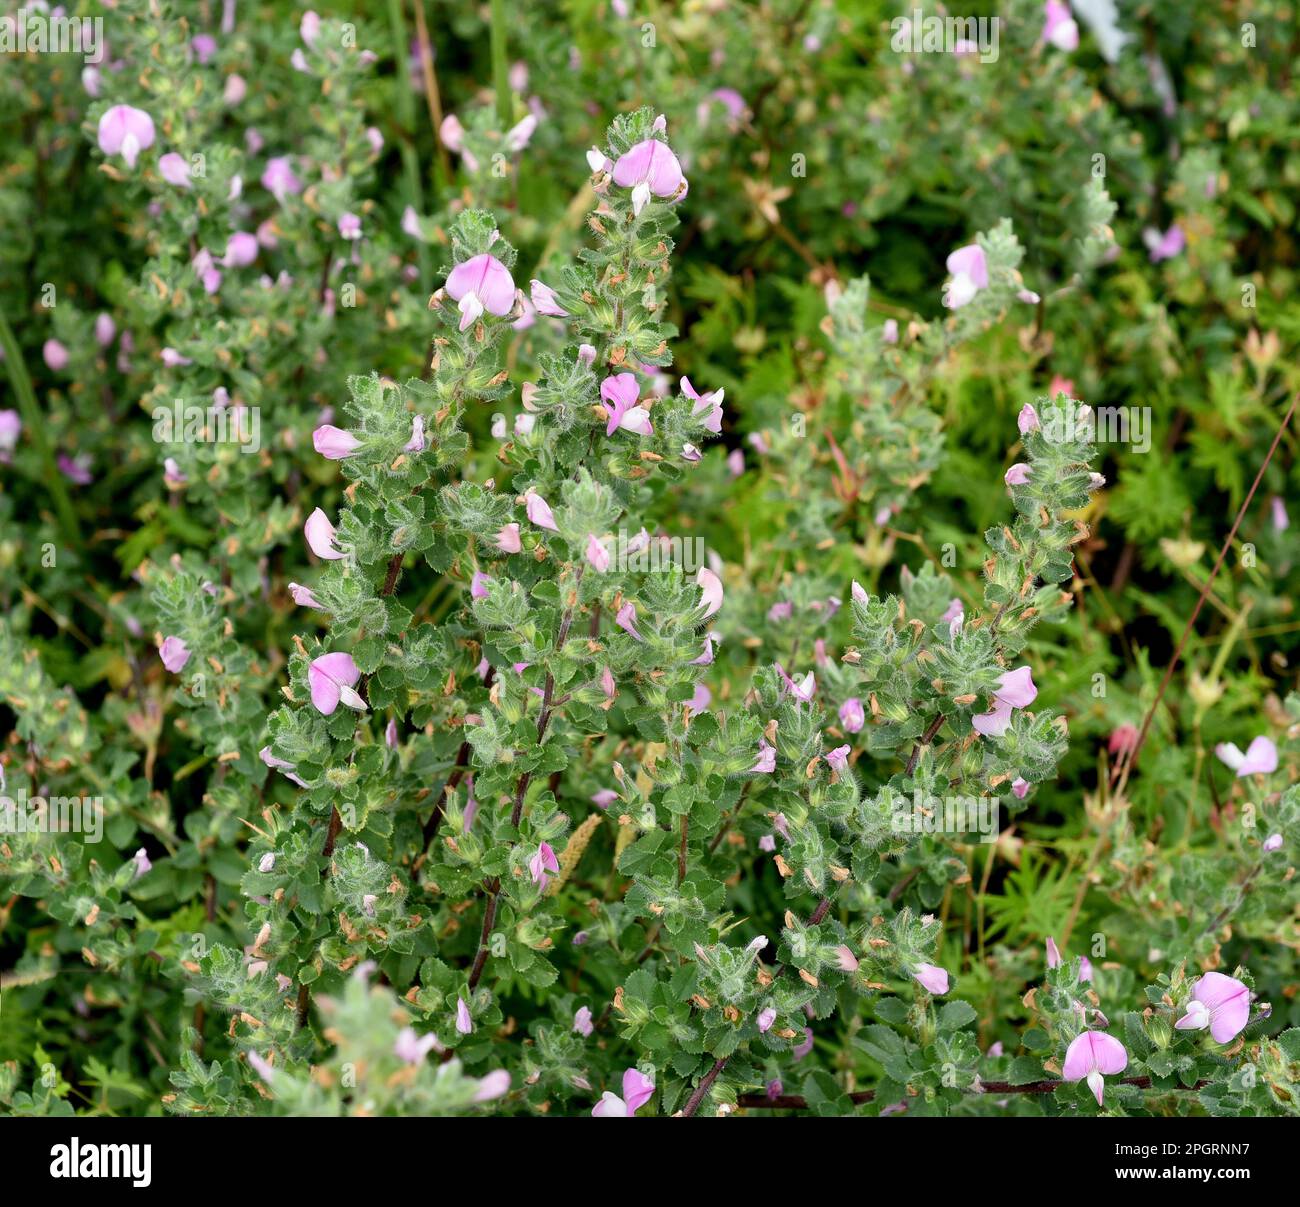 Hauhechel Dorniger, Ononis spinosa ist eine Wildpflanze und eine wichtige Heilpflanze. Restharrow spinosa, Ononis spinosa è una pianta selvatica e un'importazione Foto Stock